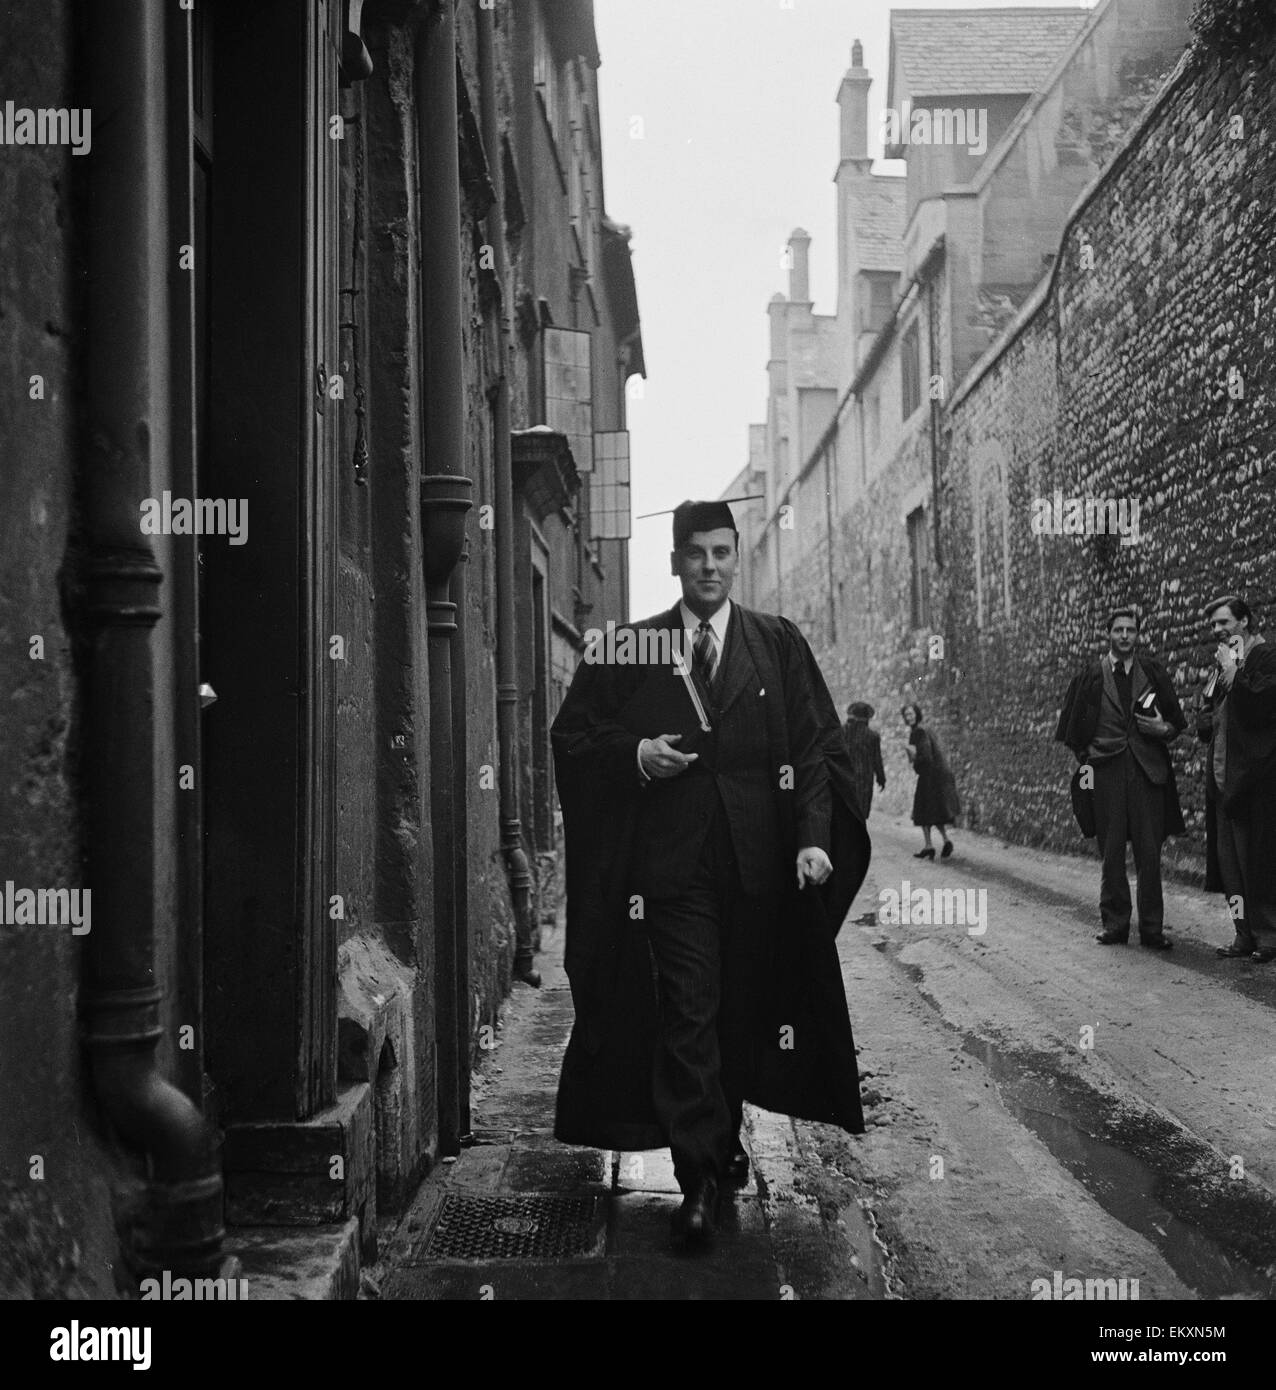 Un étudiant de l'Université d'Oxford, promenades à travers l'une des étroites ruelles de la ville portant des robes de l'université. Vers 1950. Banque D'Images